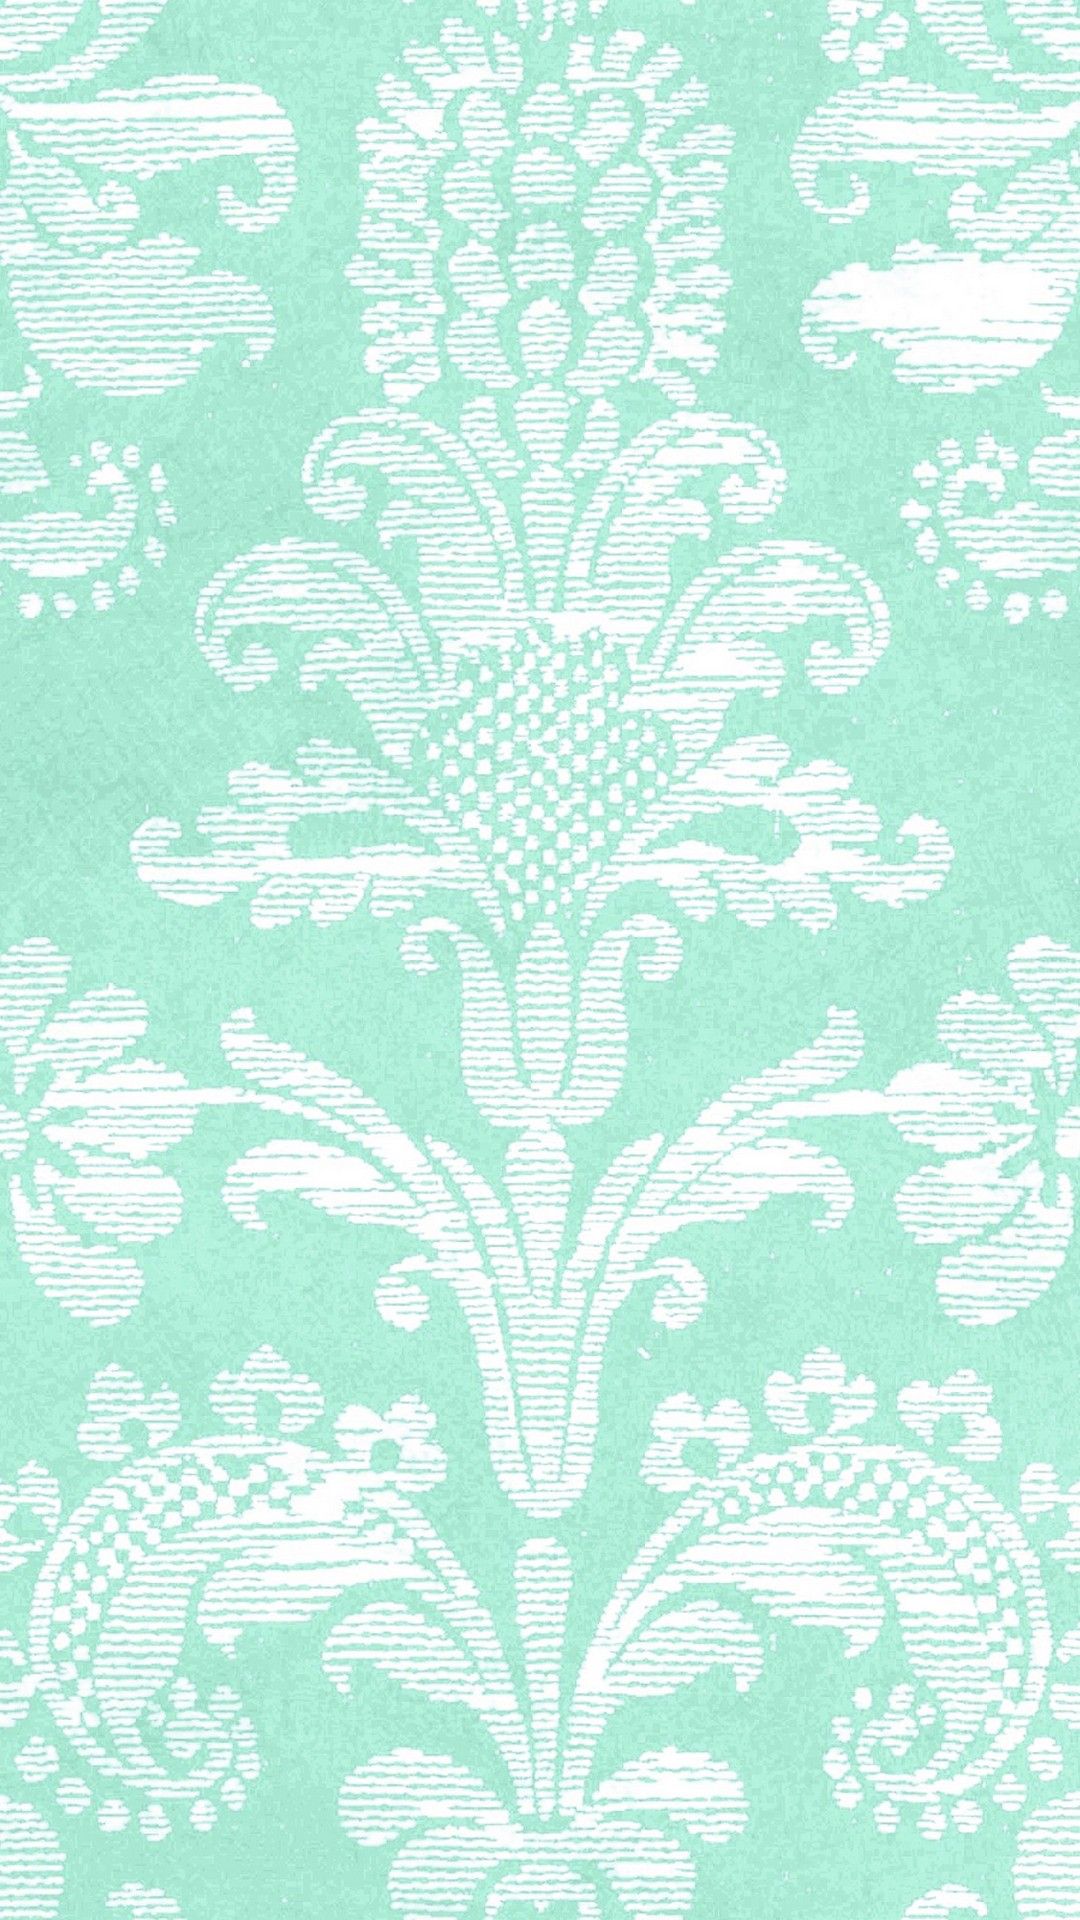 Mint Green iPhone X Wallpaper Cute Wallpaper